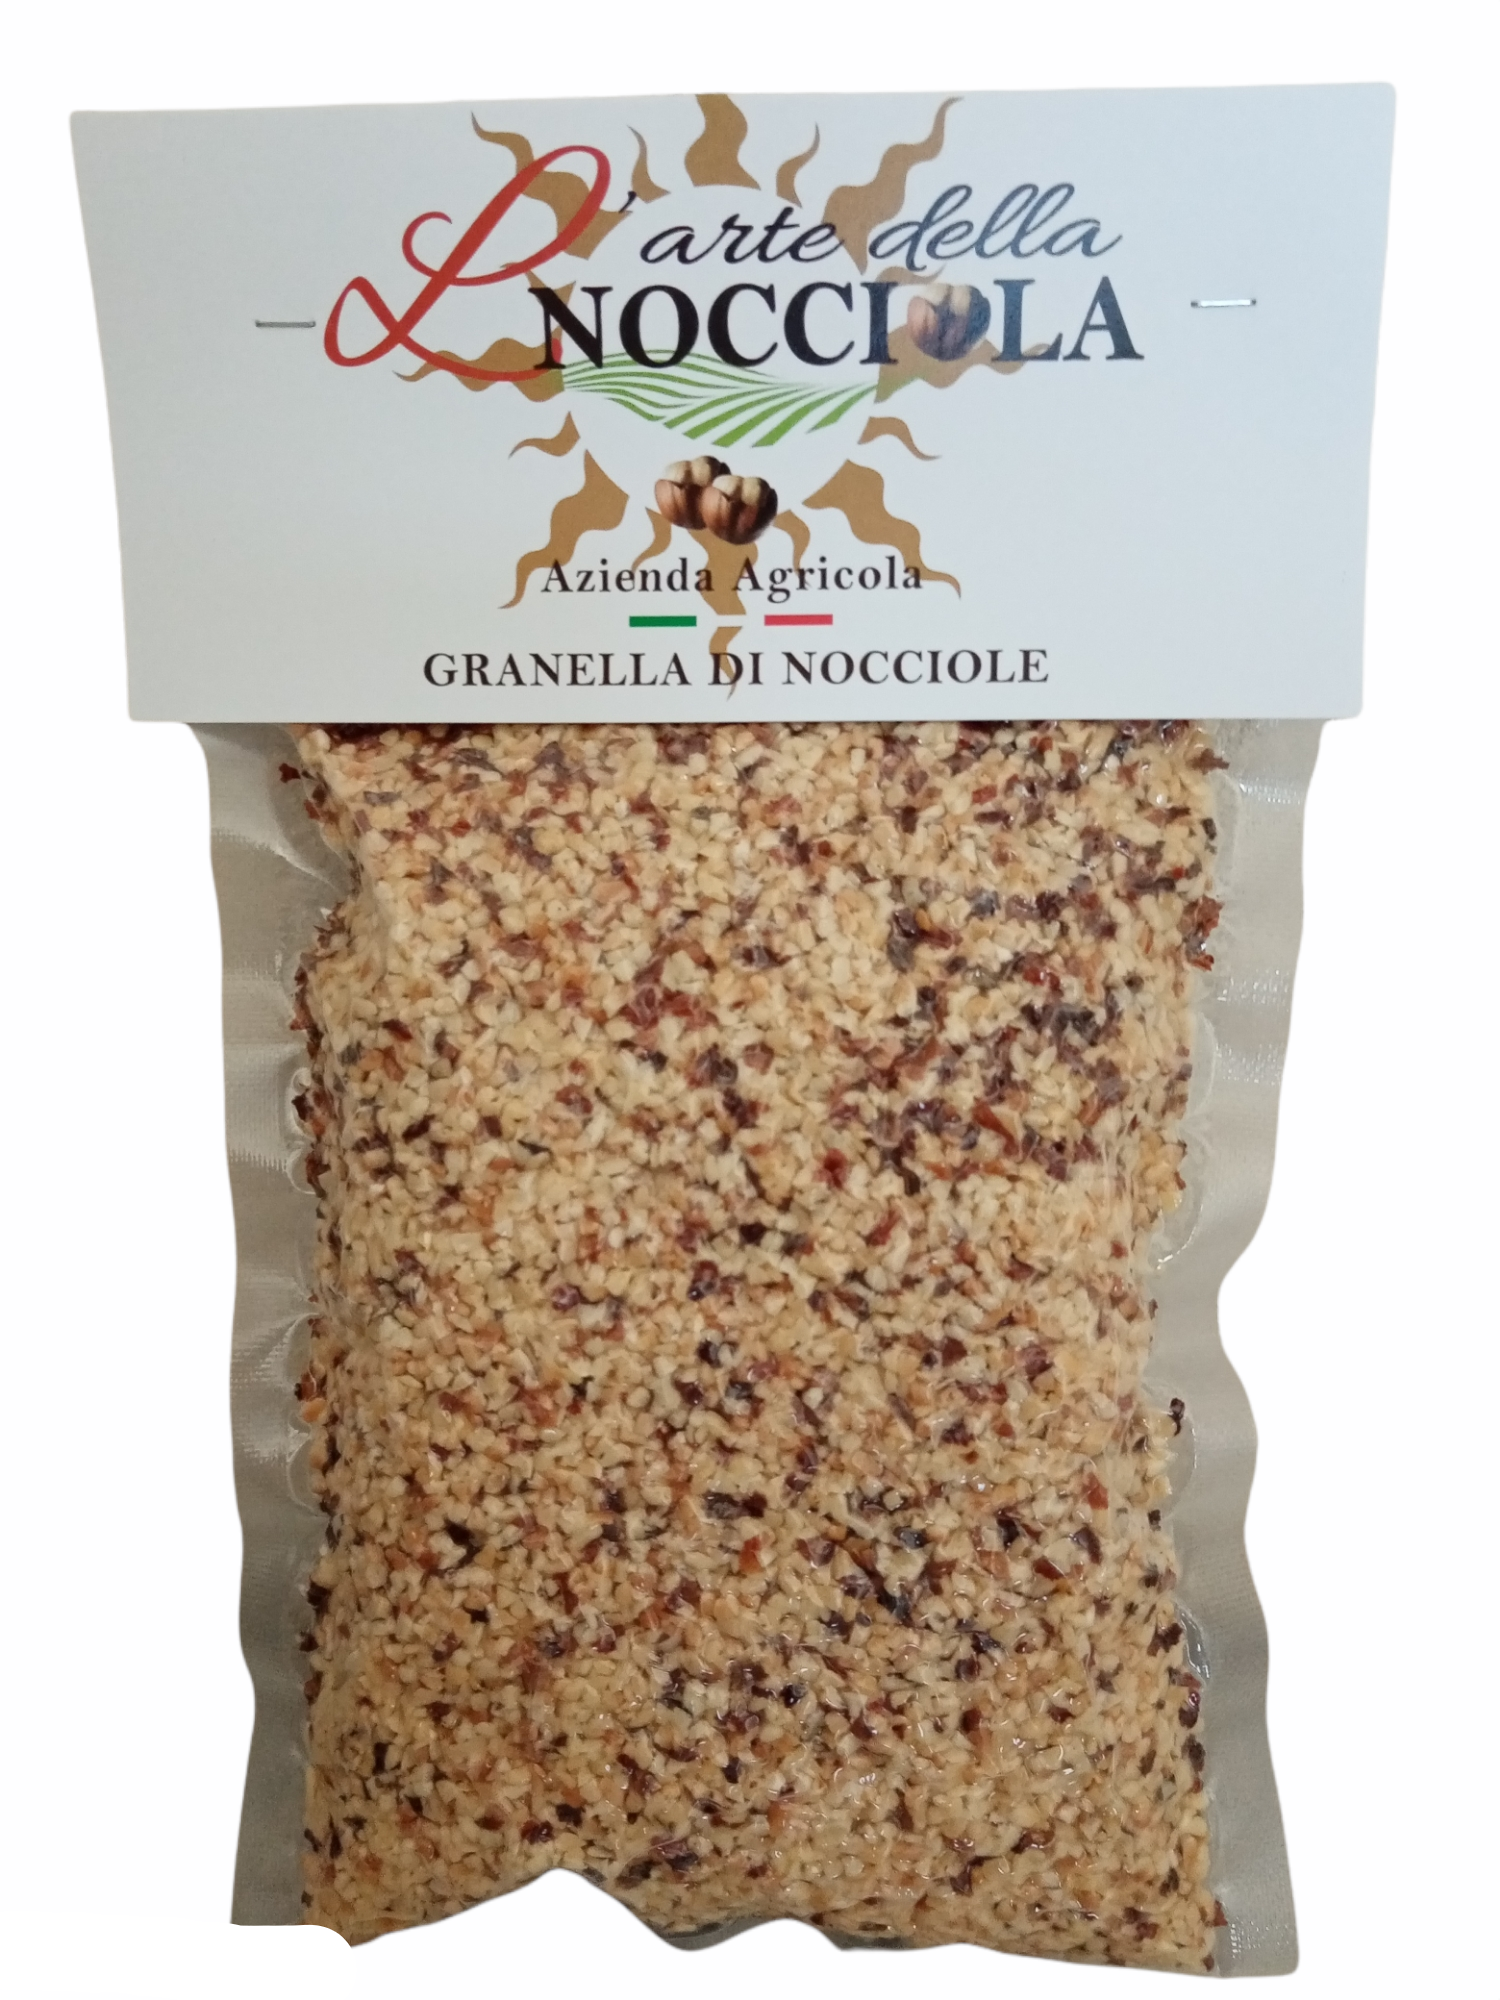 Granella Di Nocciola /Tonda Gentile Trilobata hazelnut grain